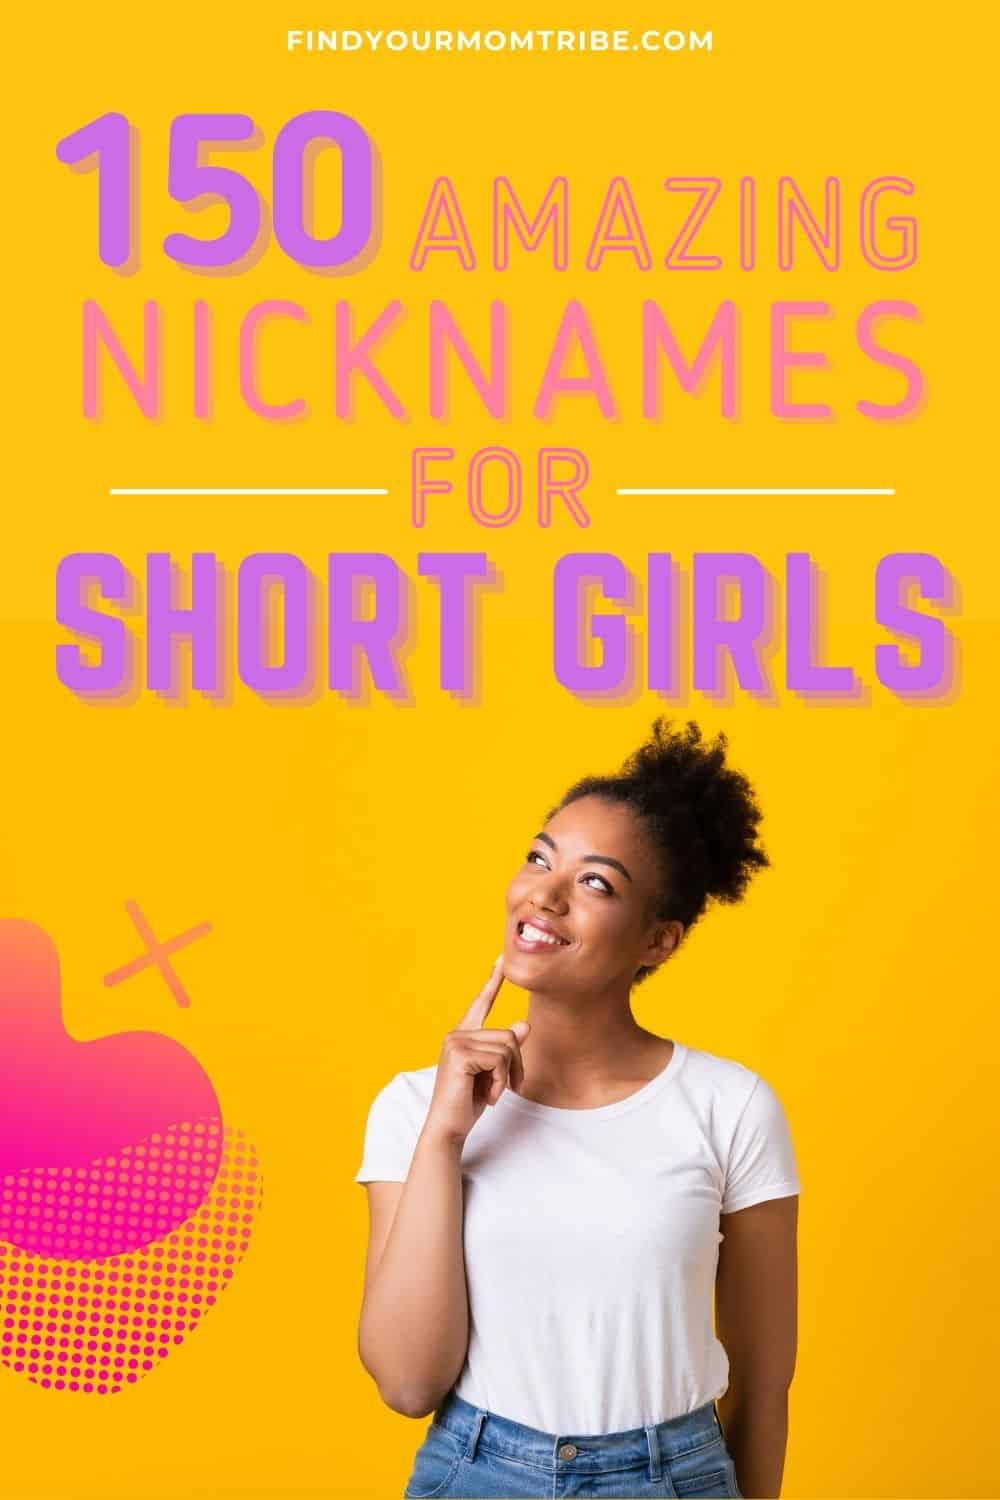 Nicknames For Short Girls pinterest